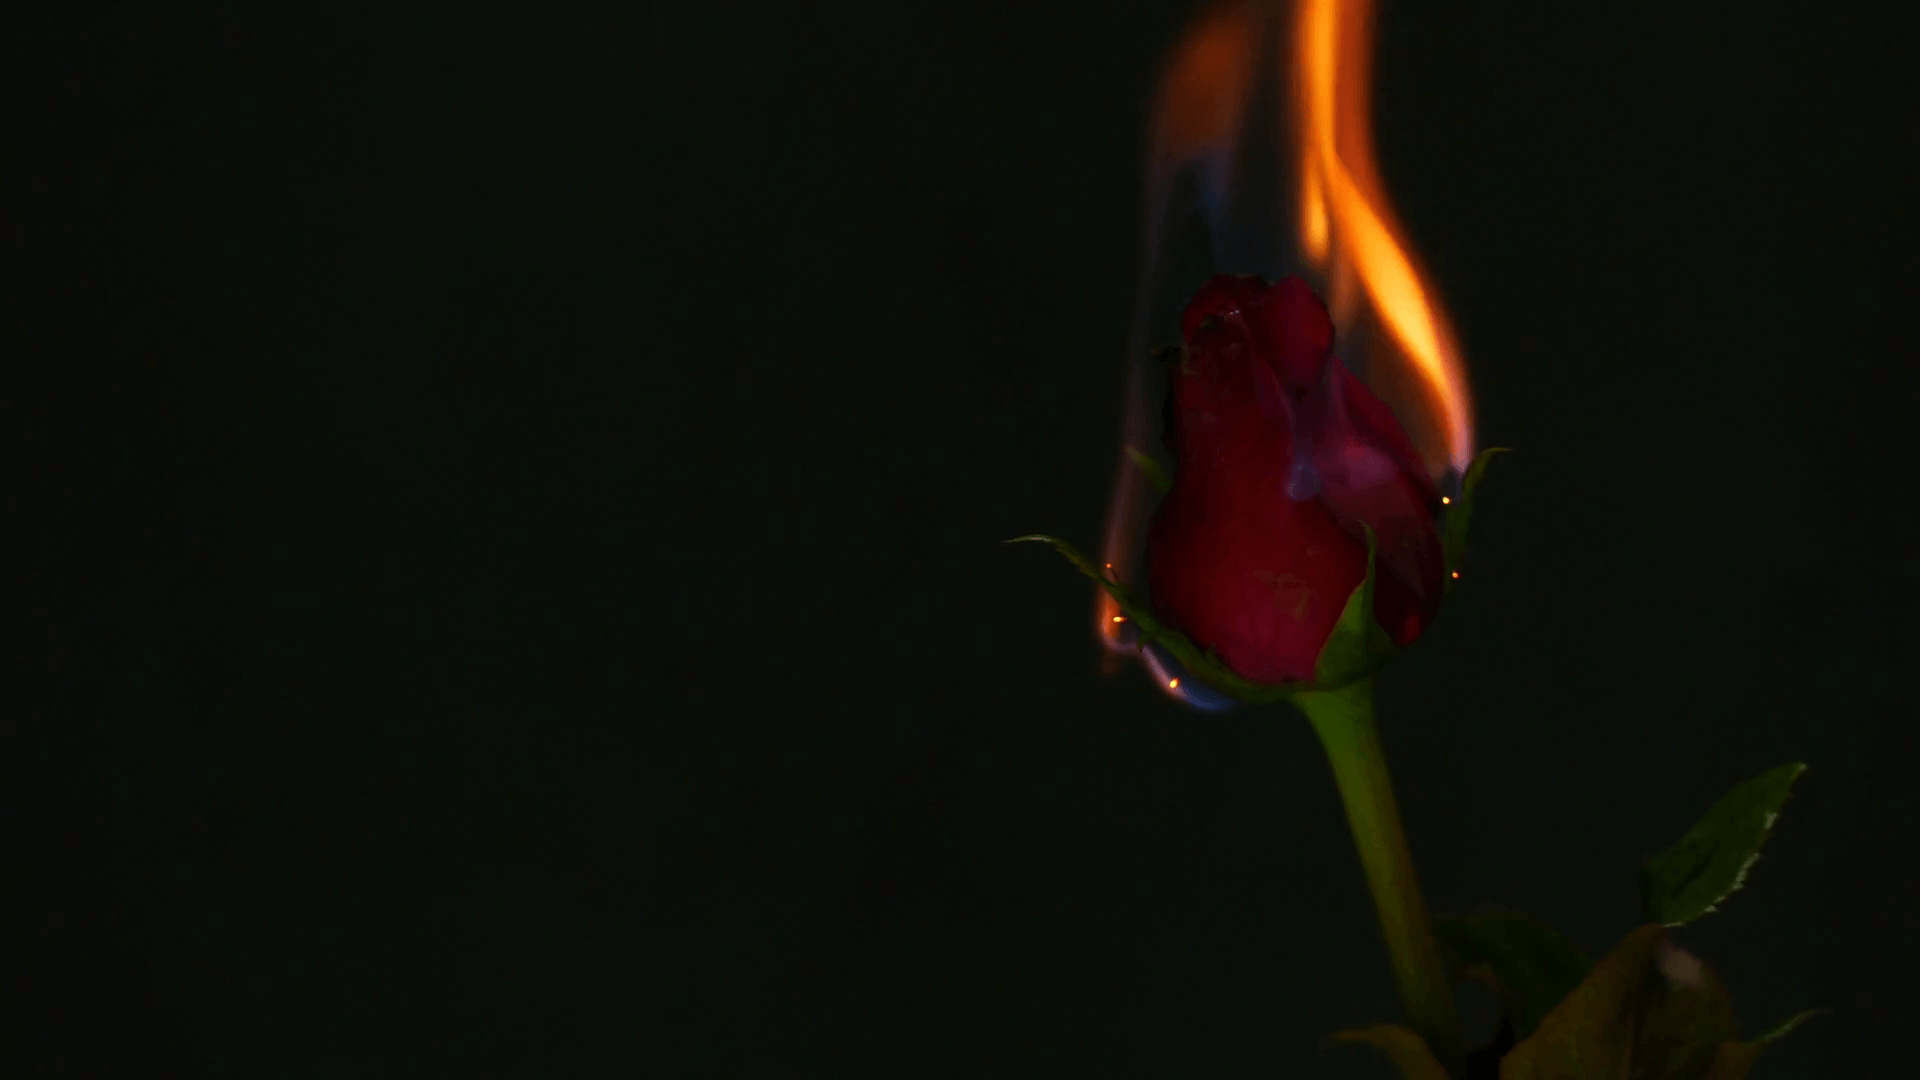 Burning Rose Wallpaper